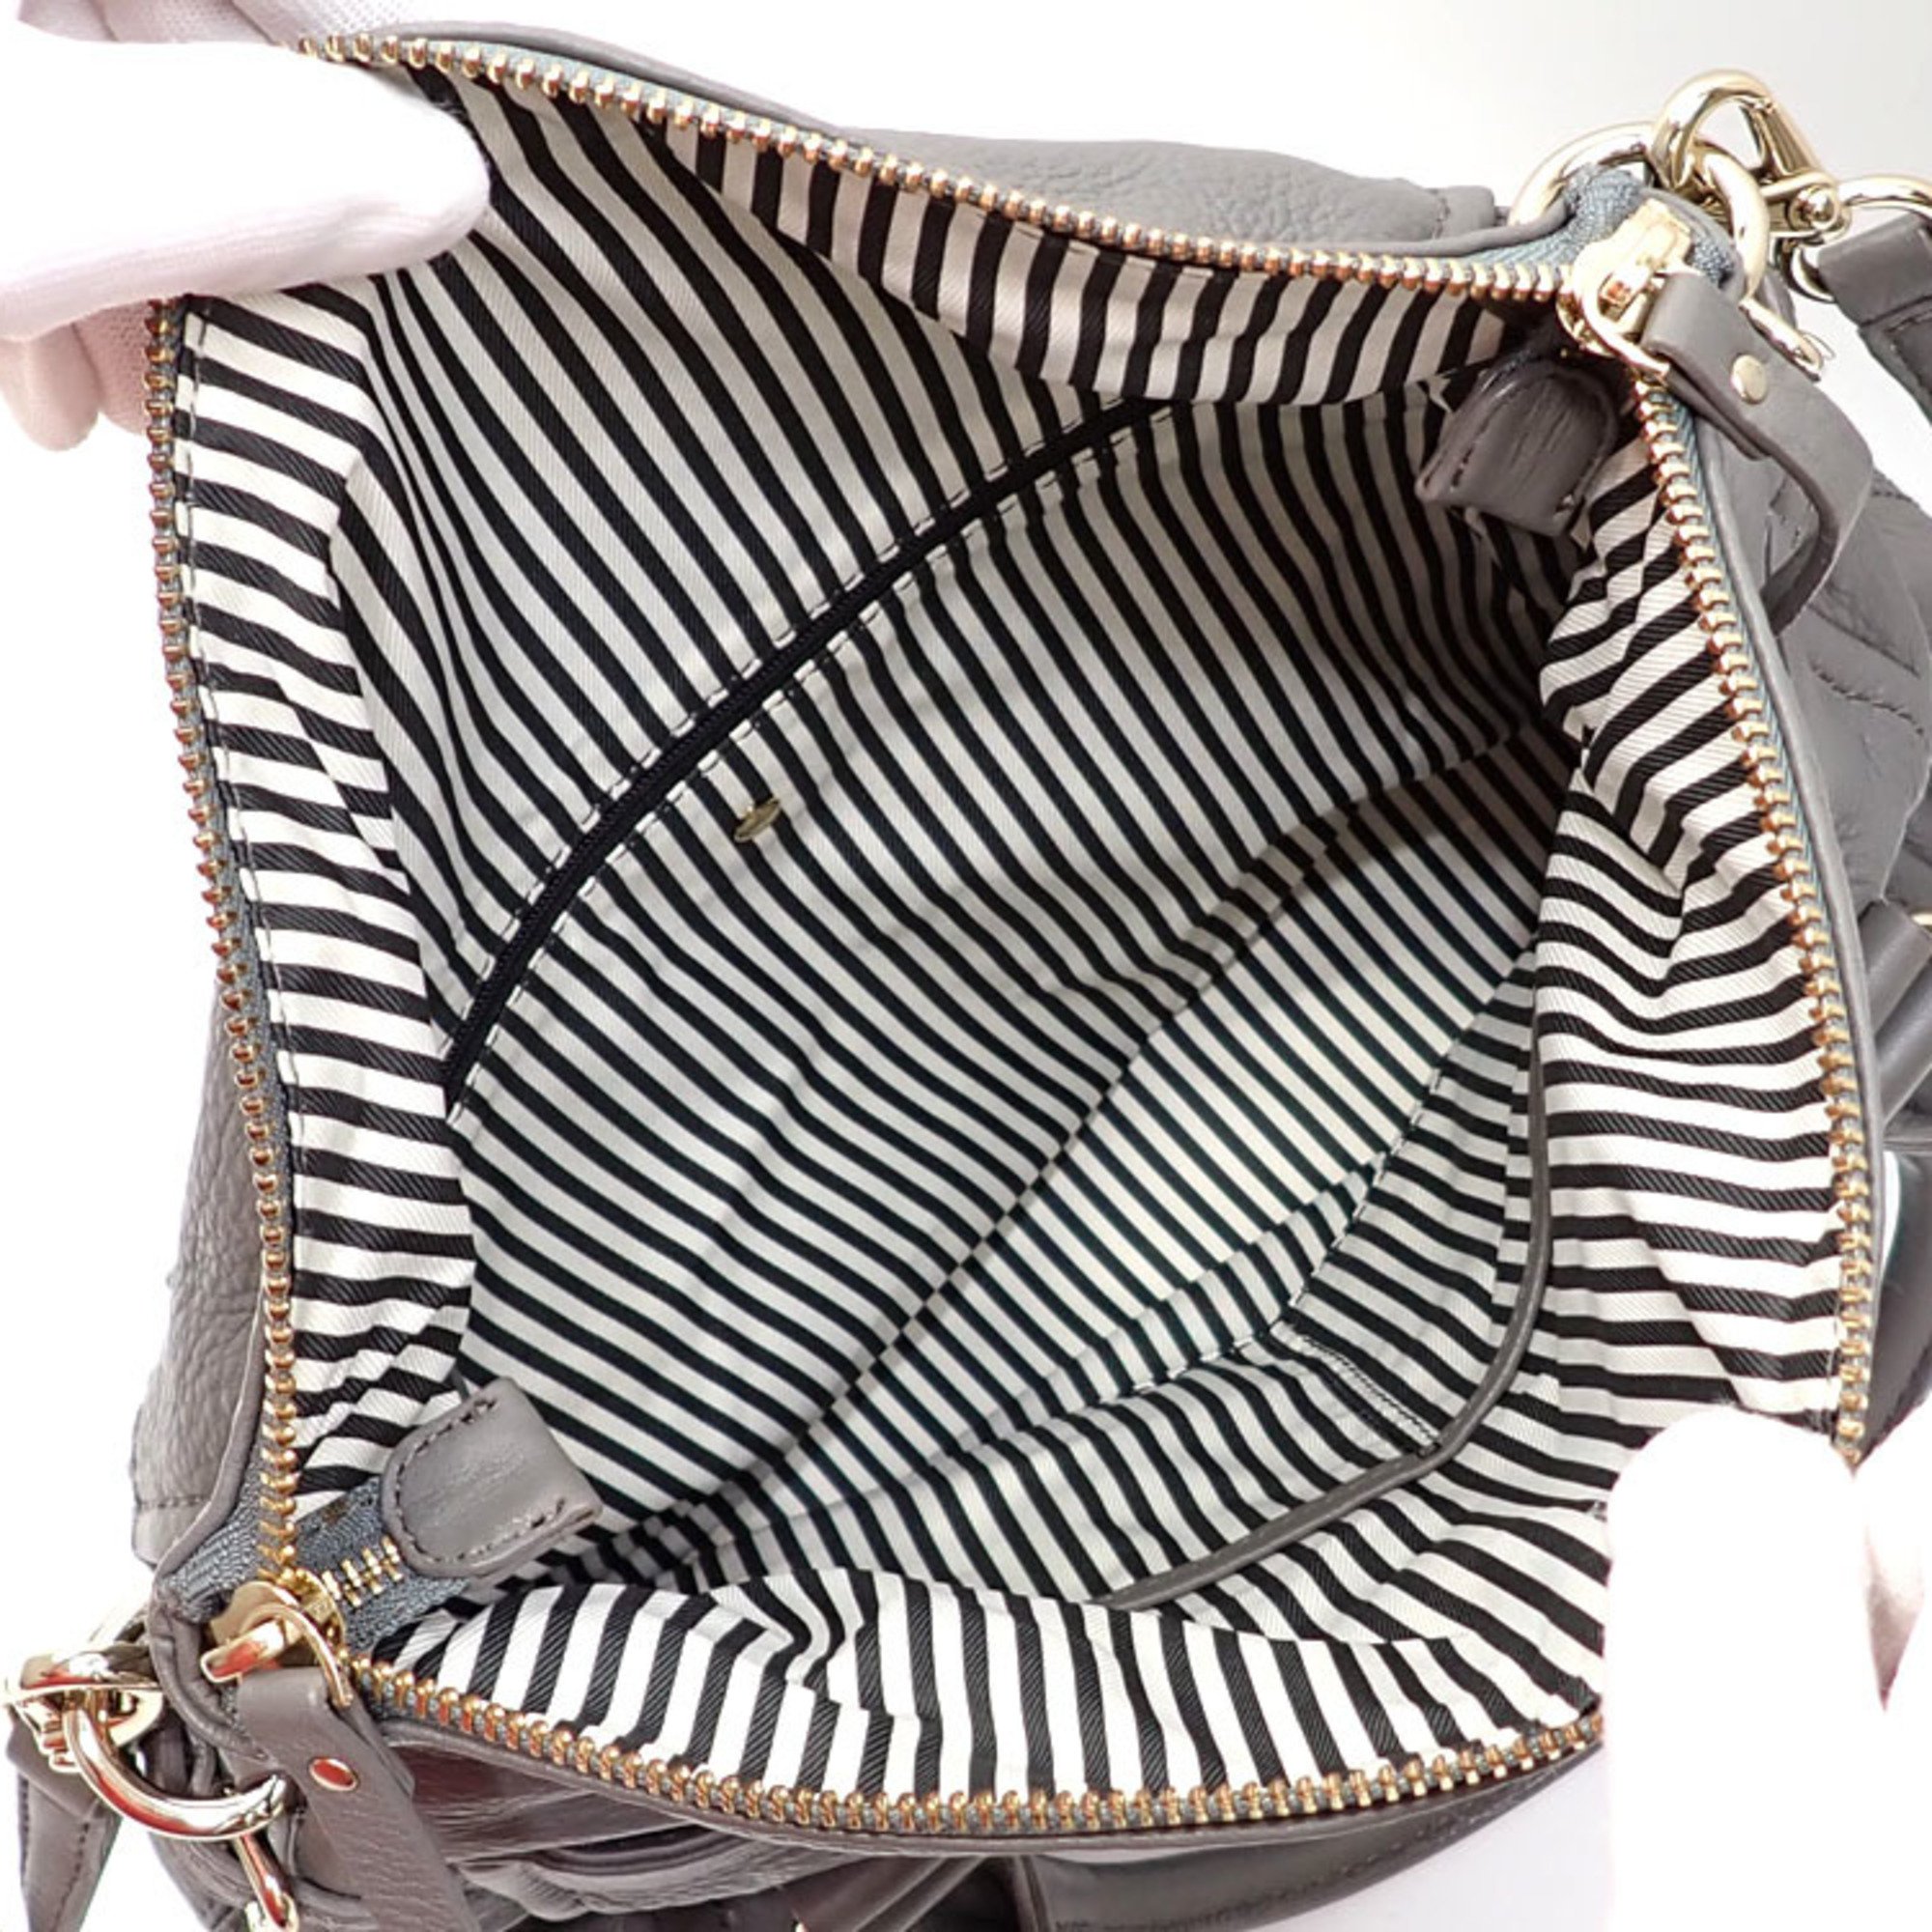 Kate Spade handbag for women, grey leather shoulder bag